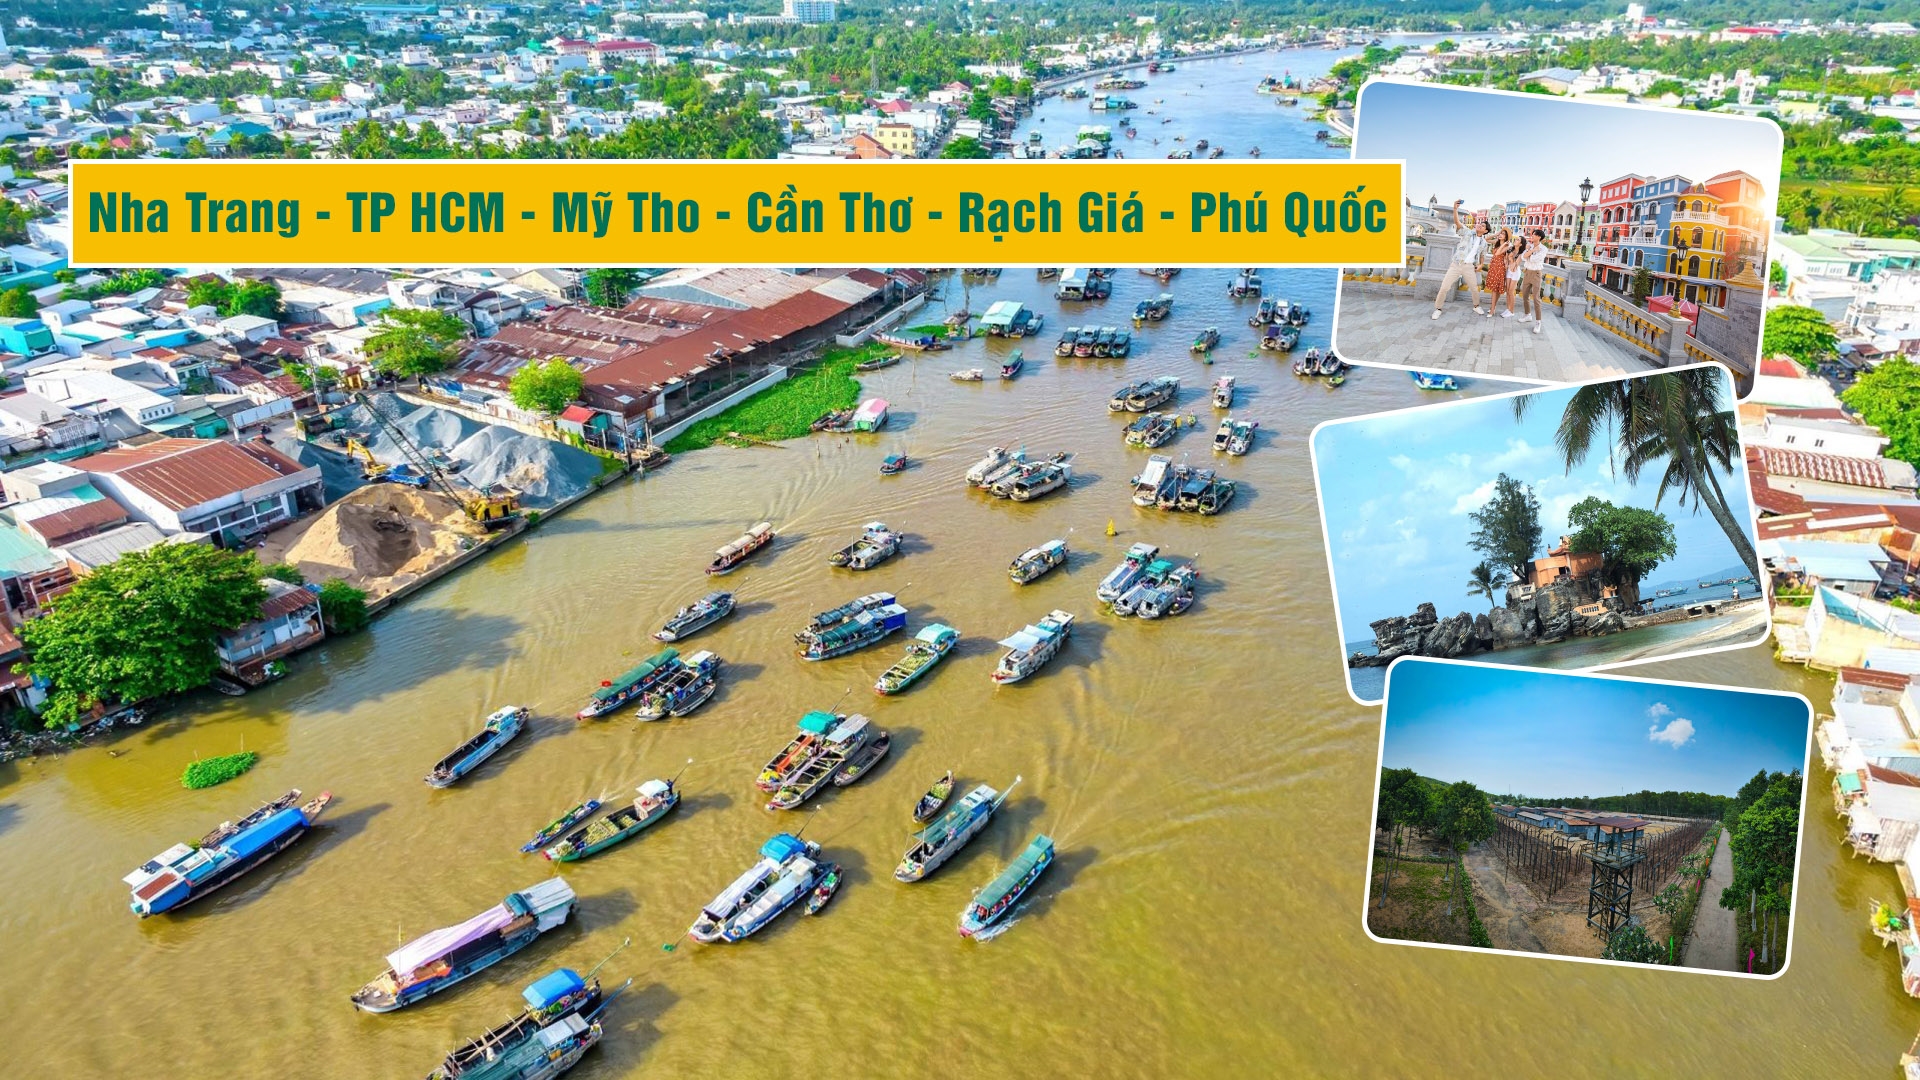 Nha Trang - TP HCM - Mỹ Tho - Cần Thơ - Rạch Giá - Phú Quốc